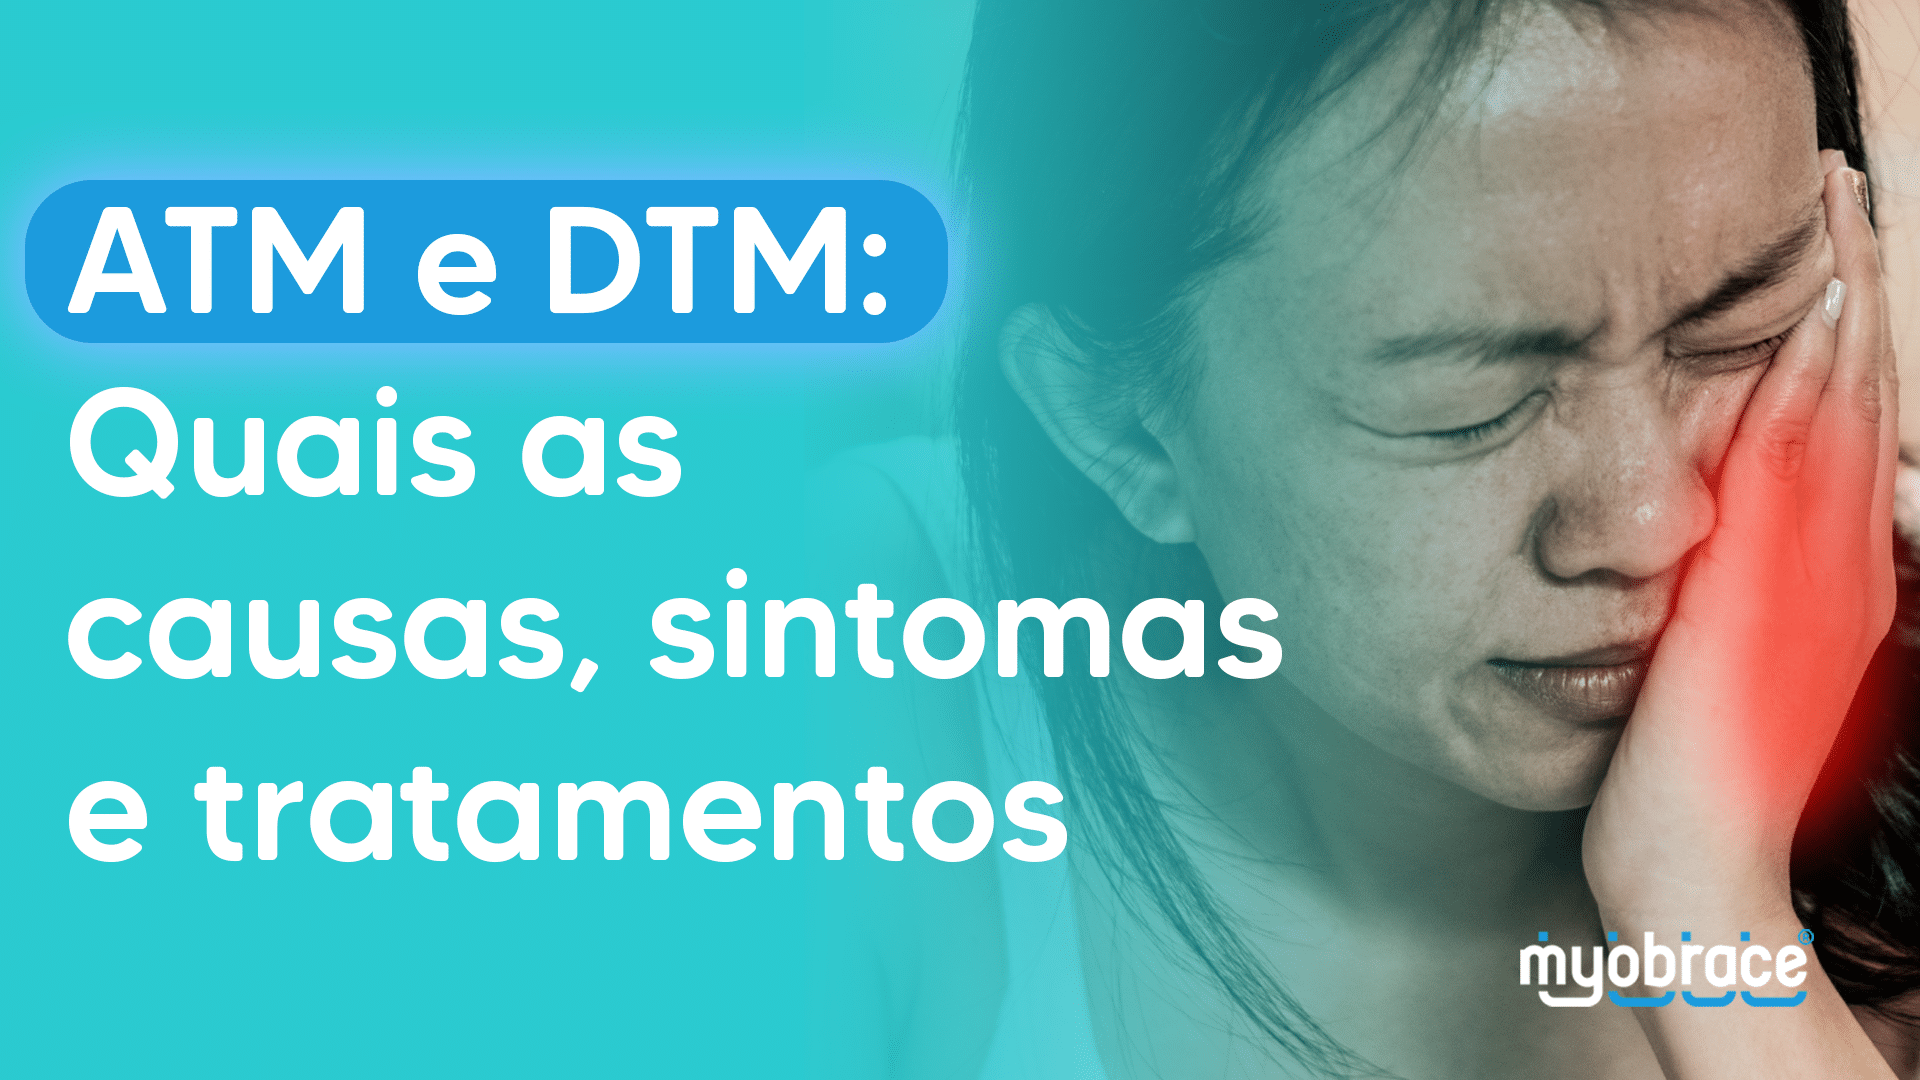 atm e dtm, dtm, atm, disfunção temporomandibular e dor orofacial, dtm o que é, atm sintomas, o que é dtm, atm o que é, disfunção temporomandibular, o que é atm, sintomas dtm, Myobrace, Odontologia Miofuncional